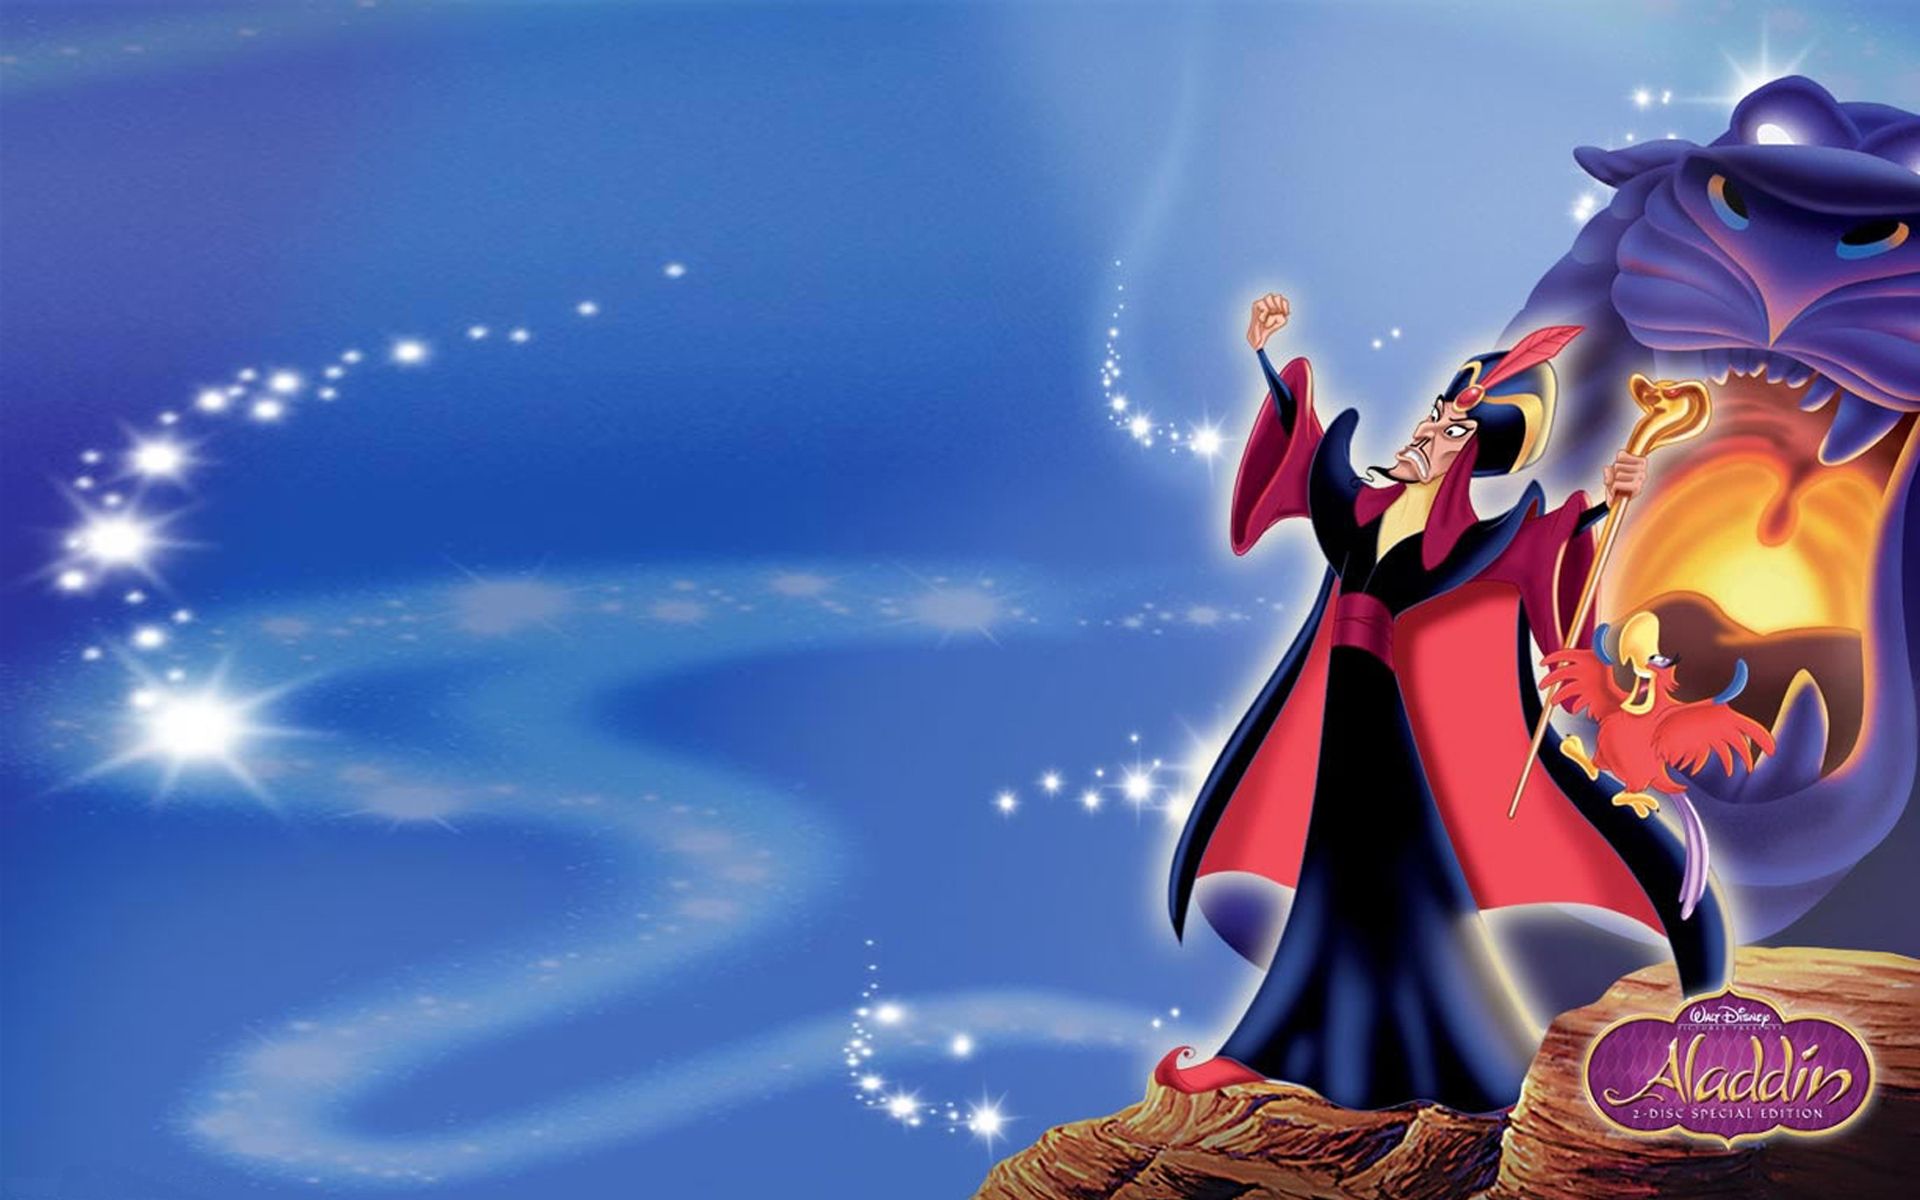 Aladdin Cartoon The Return Of The Jafar Wizard HD Wallpaper